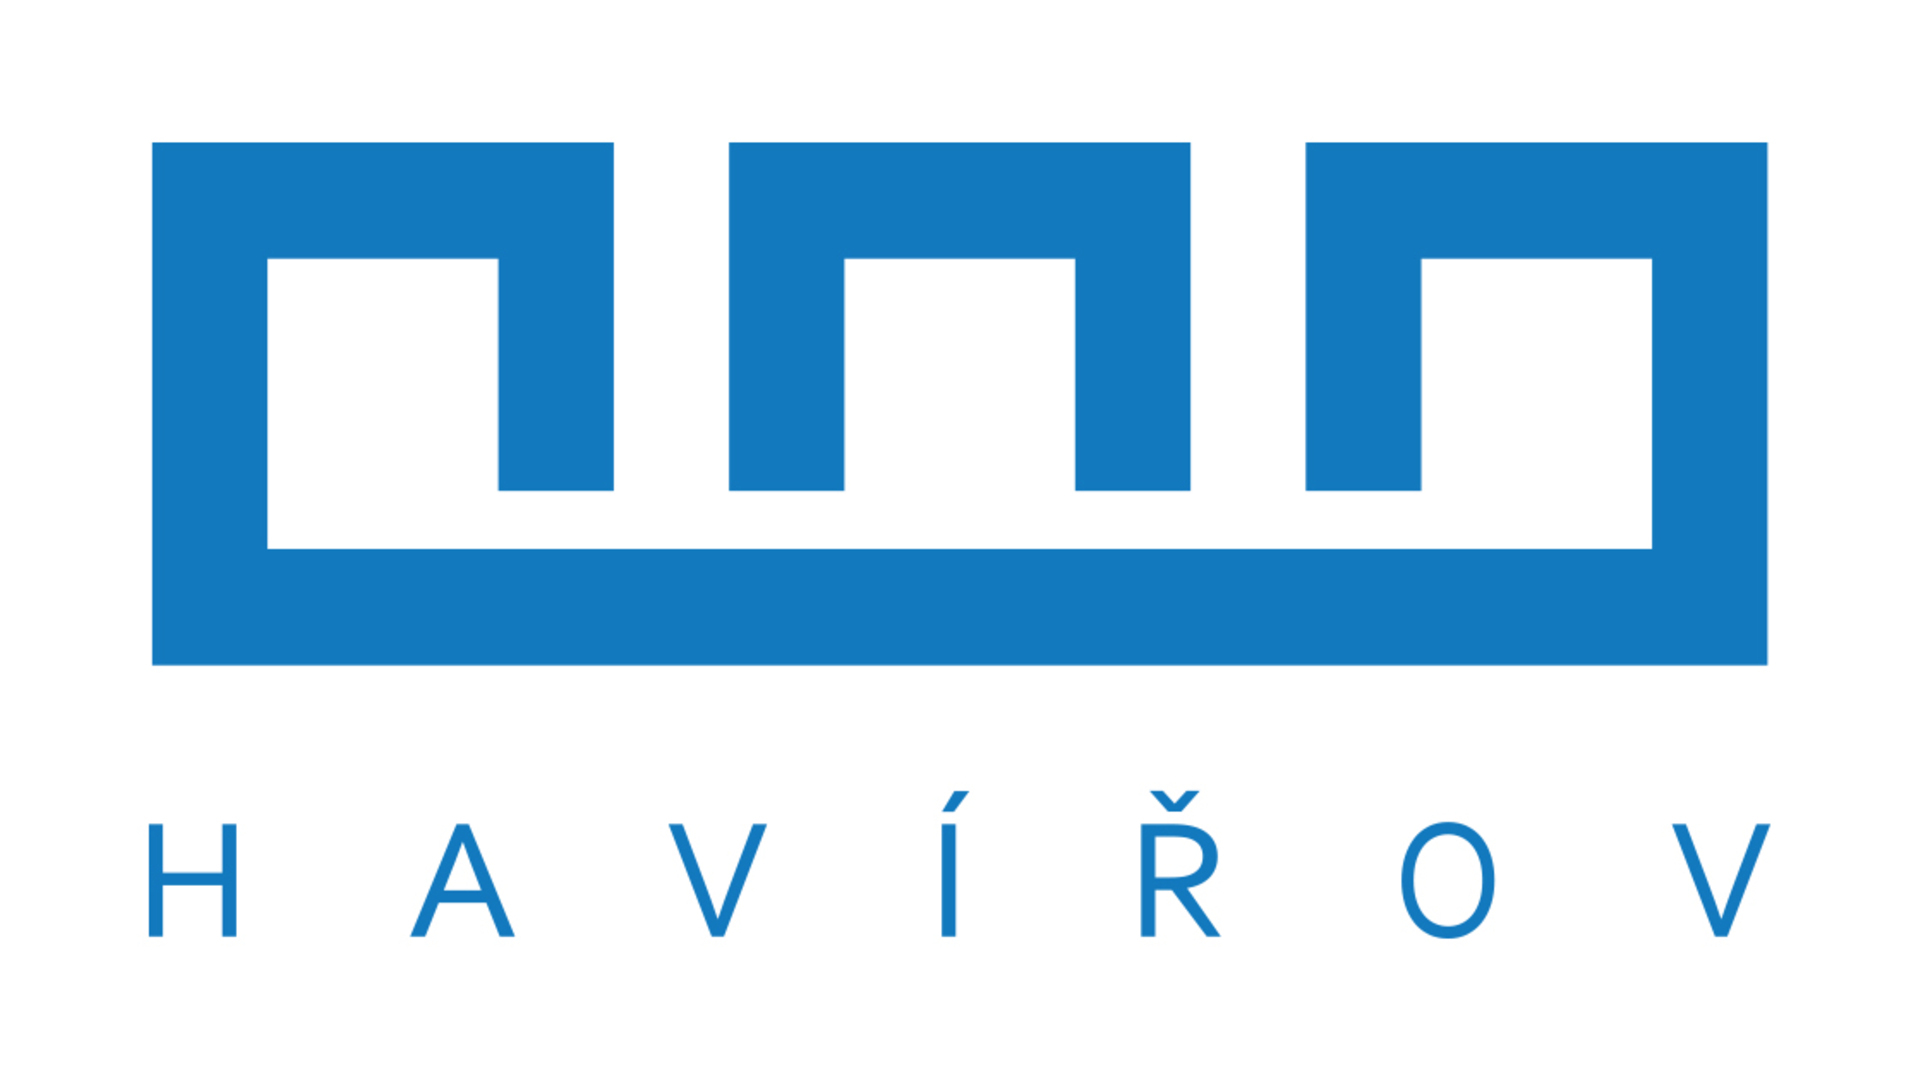 Havířov mở rộng hoạt động của hệ thống đặt phòng trực tuyến Reservatic